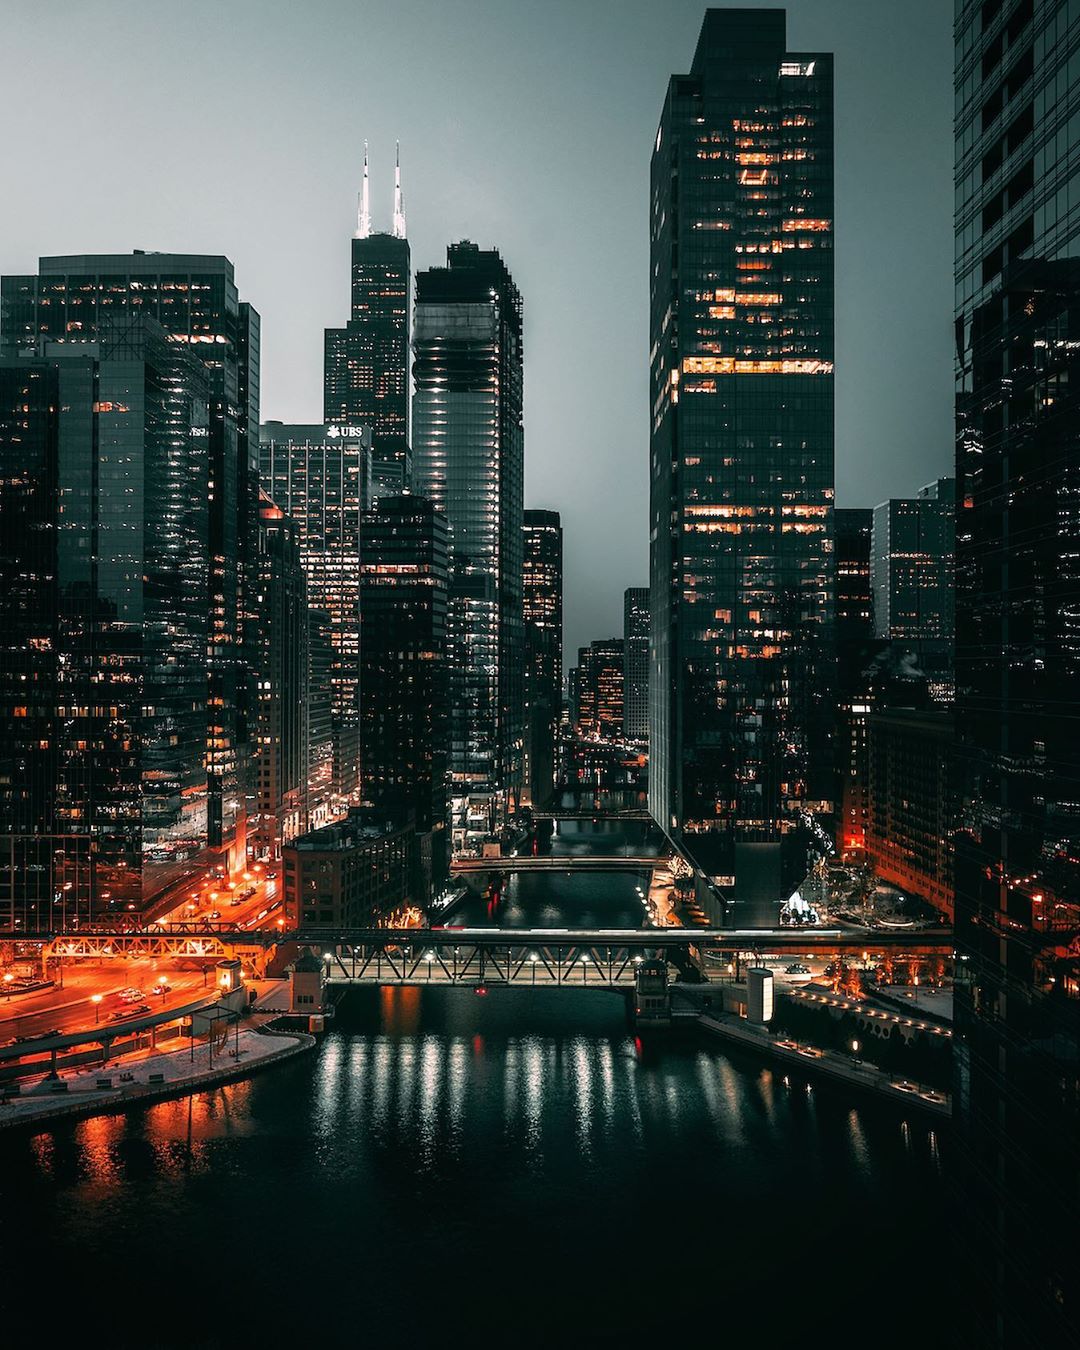 Чикаго на атмосферных снимках Бенджамина Сутера городской, Бенджамин, образом, Читать, подписчиков, почти, Instagram, делится, работами, Своими, фотографии, пейзажной, архитектурной, фокусируется, главным, Сутер, Иллинойс, Чикаго, проживающий, время